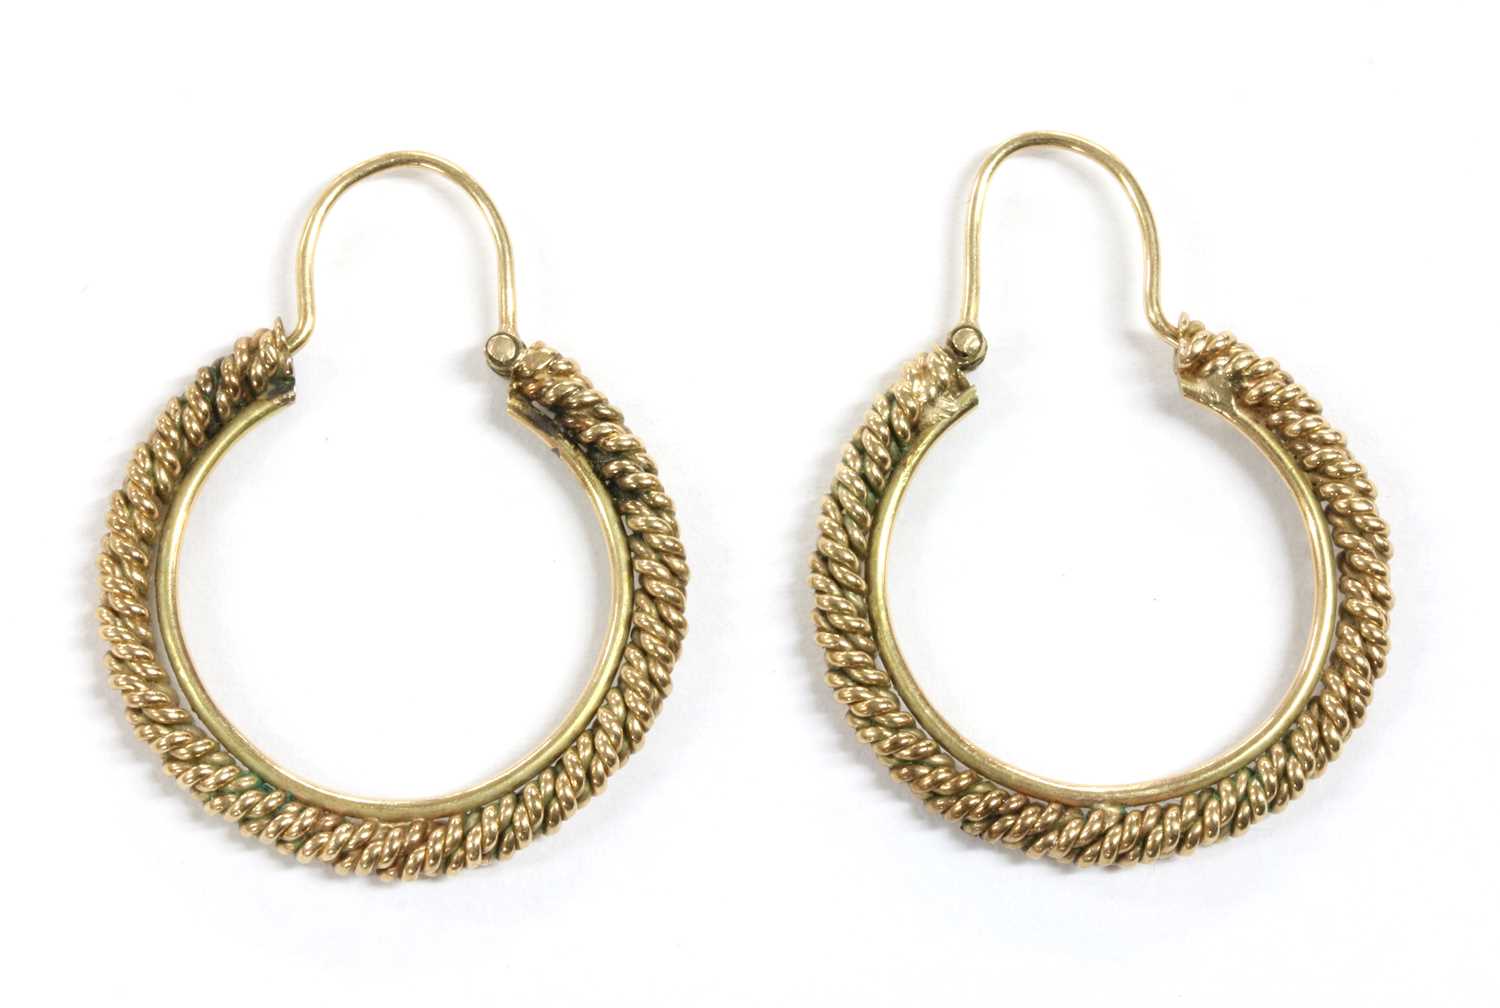 Lot 100 - A pair of gold hoop earrings